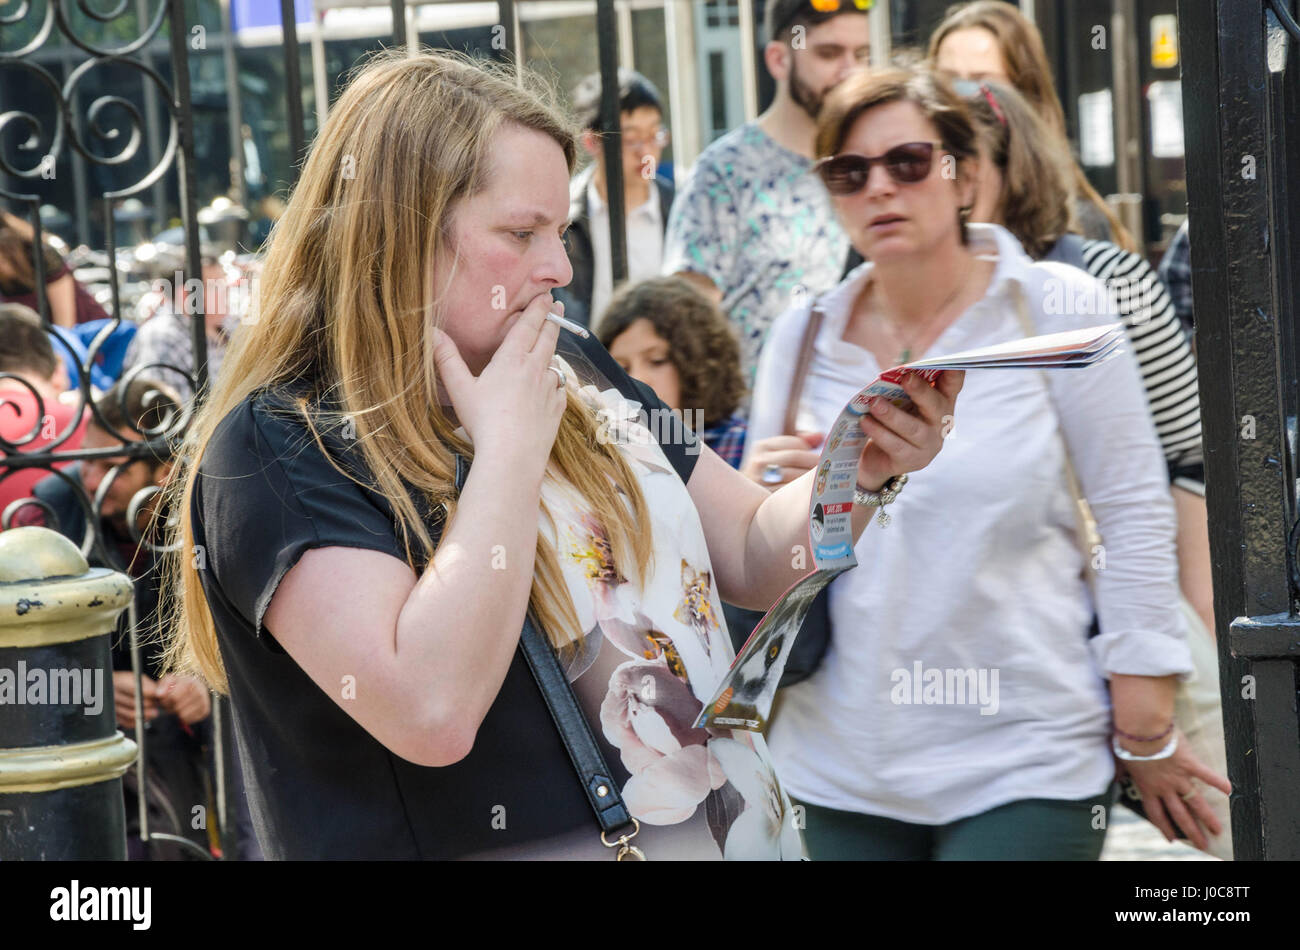 Une dame consulte un guide touristique brochure tout en fumant une cigarette dans la rue.. Banque D'Images